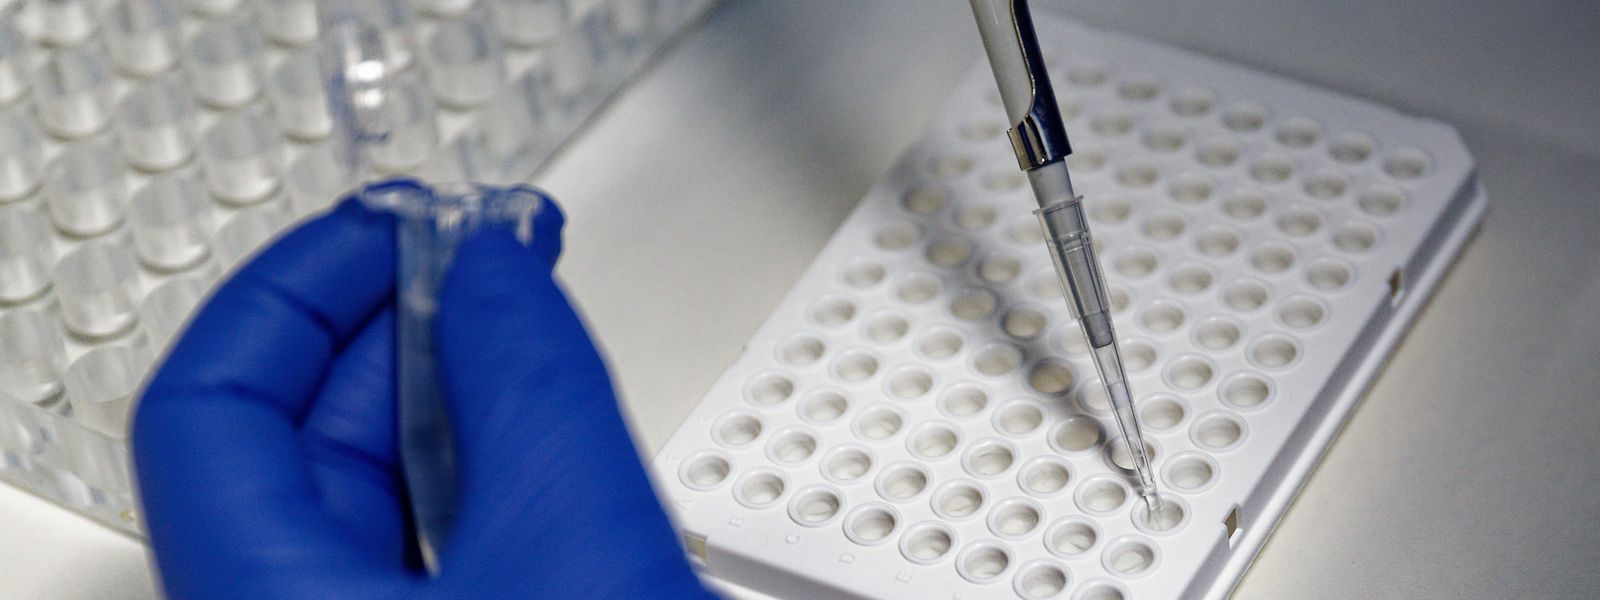 Pour le pétitionnaire Celestino Fecchi, les tests PCR ne doivent pas être payants, «même en l'absence de symptômes covid et sans ordonnance médicale».